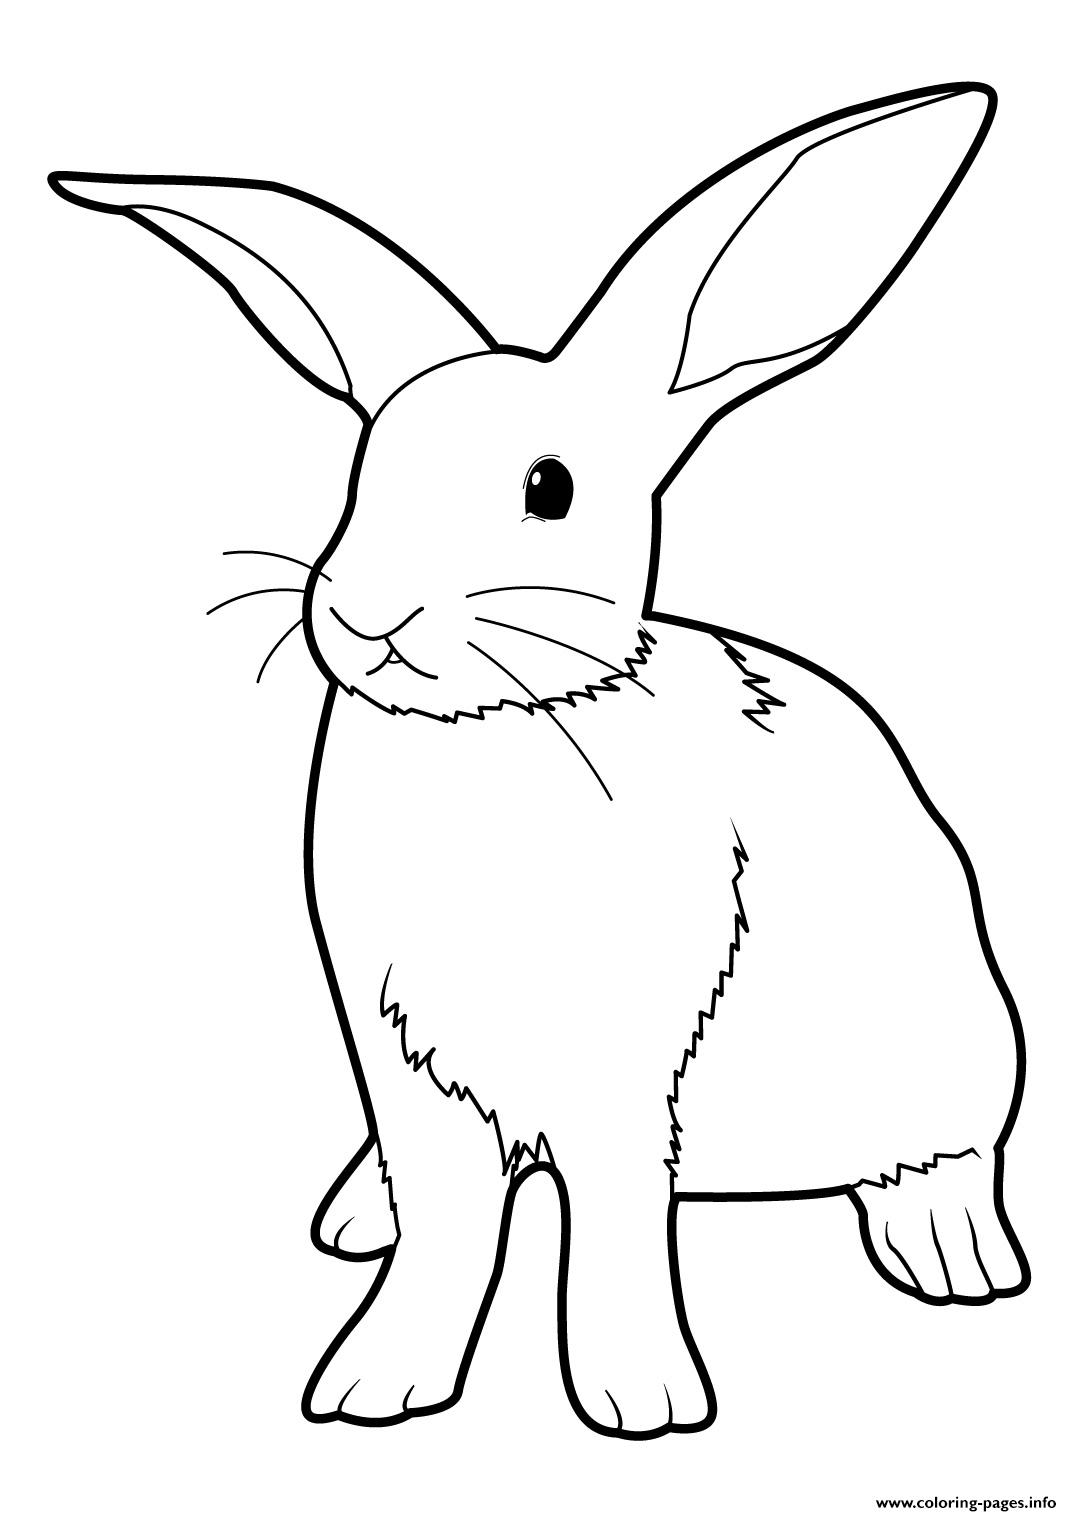 Tranh tô màu chú thỏ tai dài